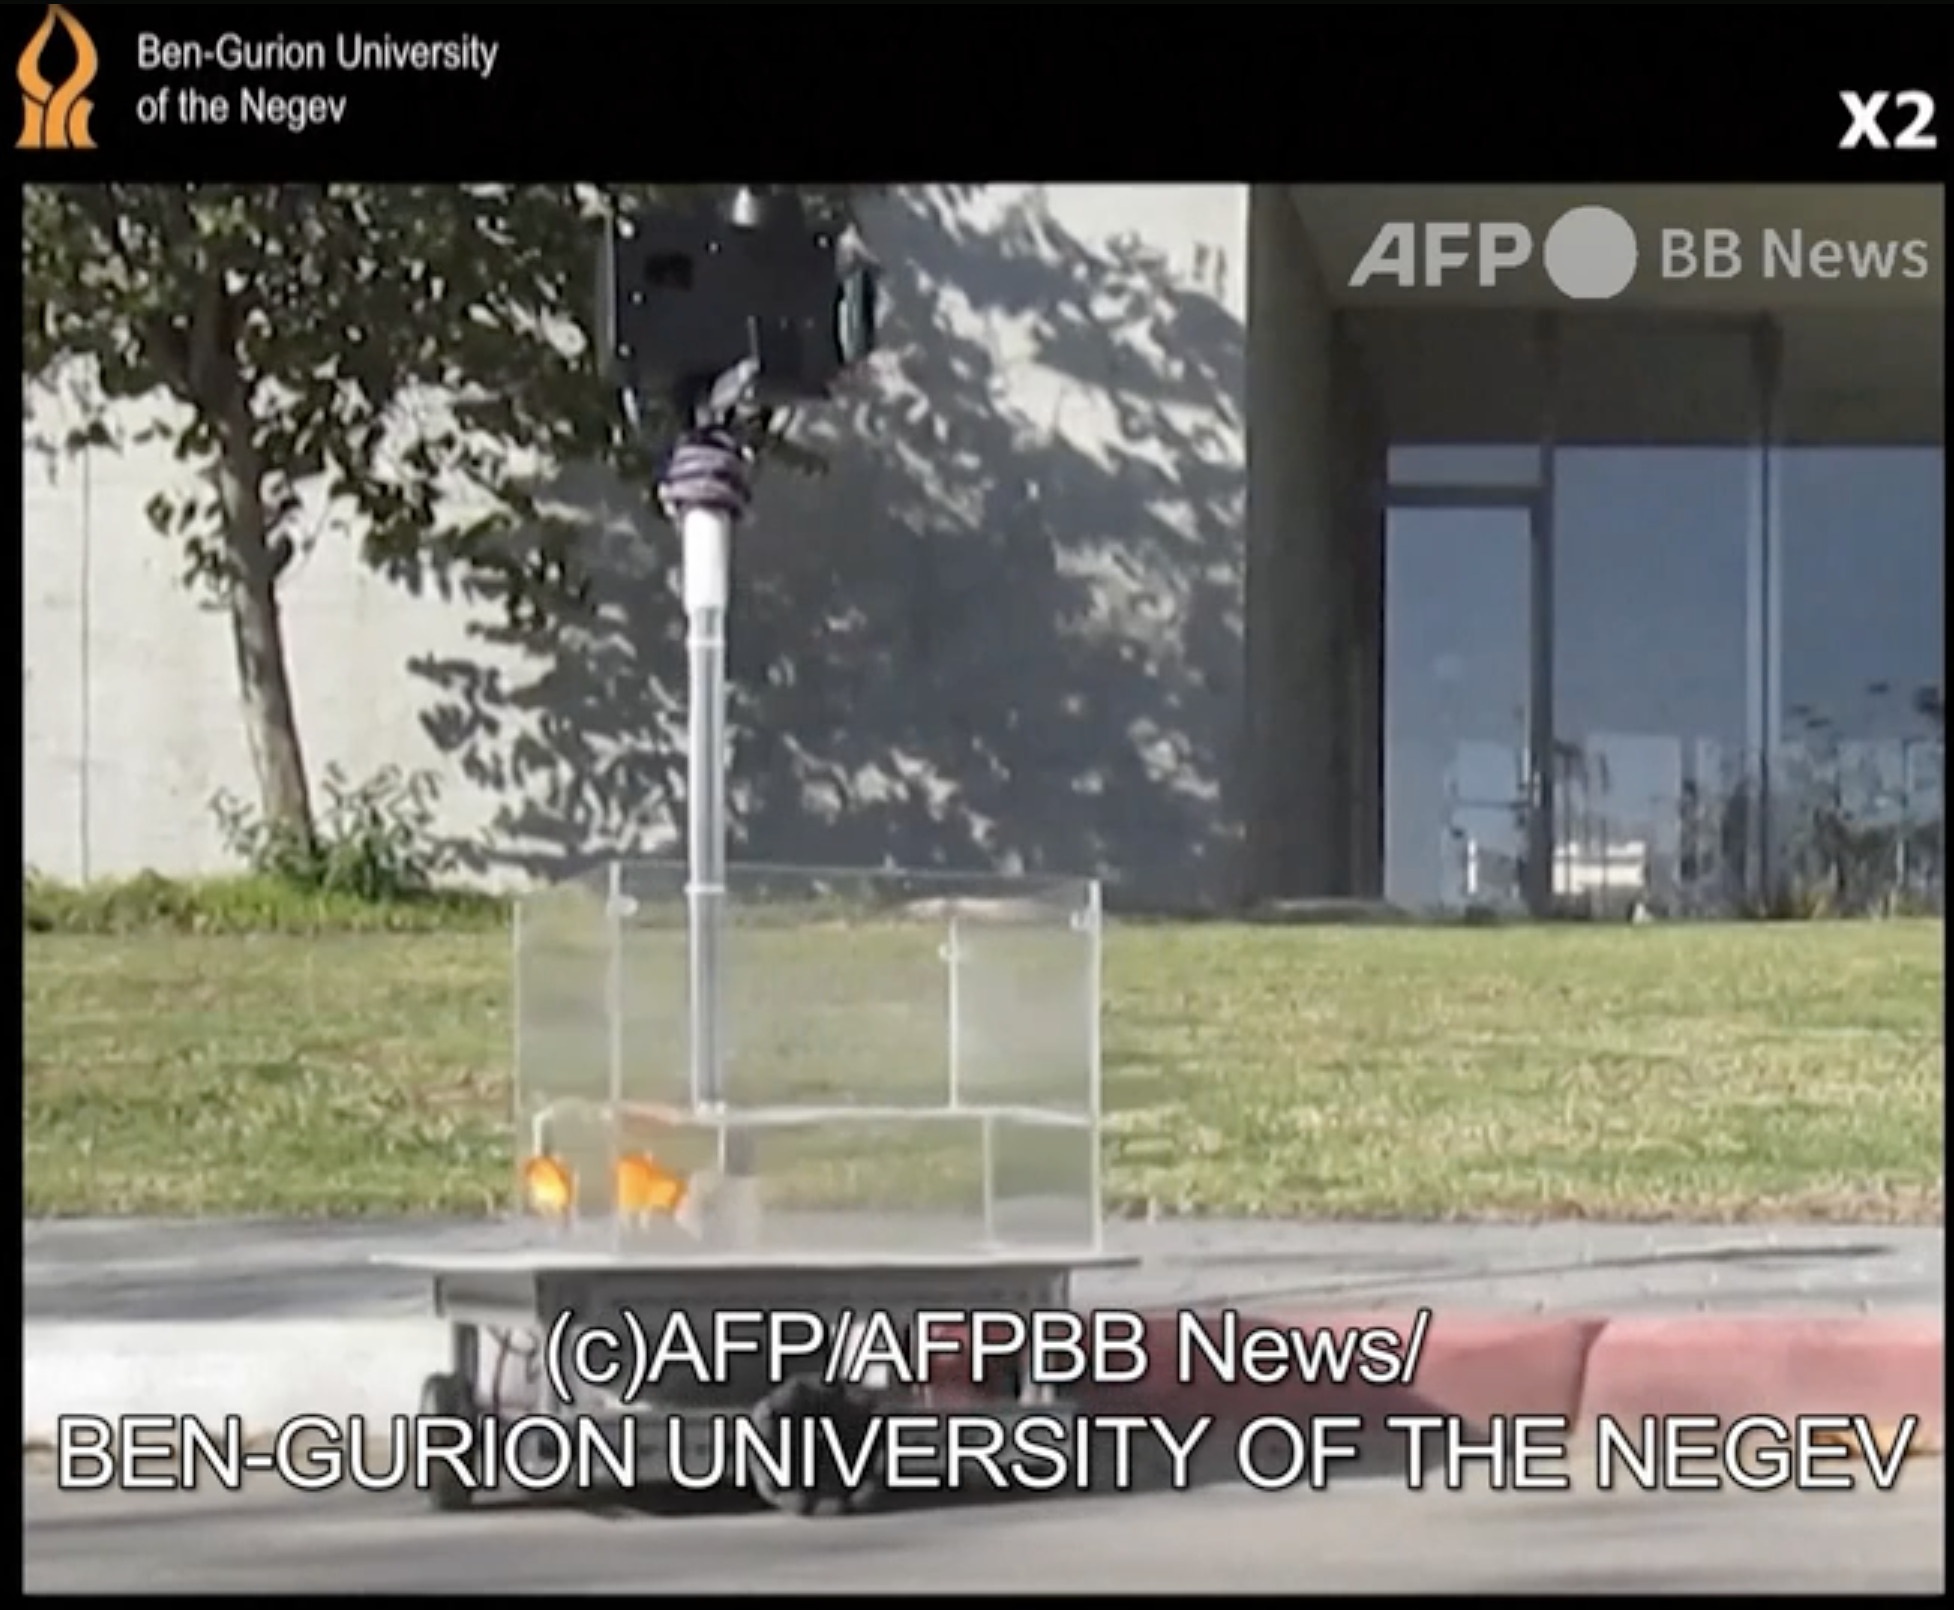 ベングリオン大学提供の動画より（C）AFP/AFPBB News/BEN-GURION UNIVERSITY OF THE NEGEV